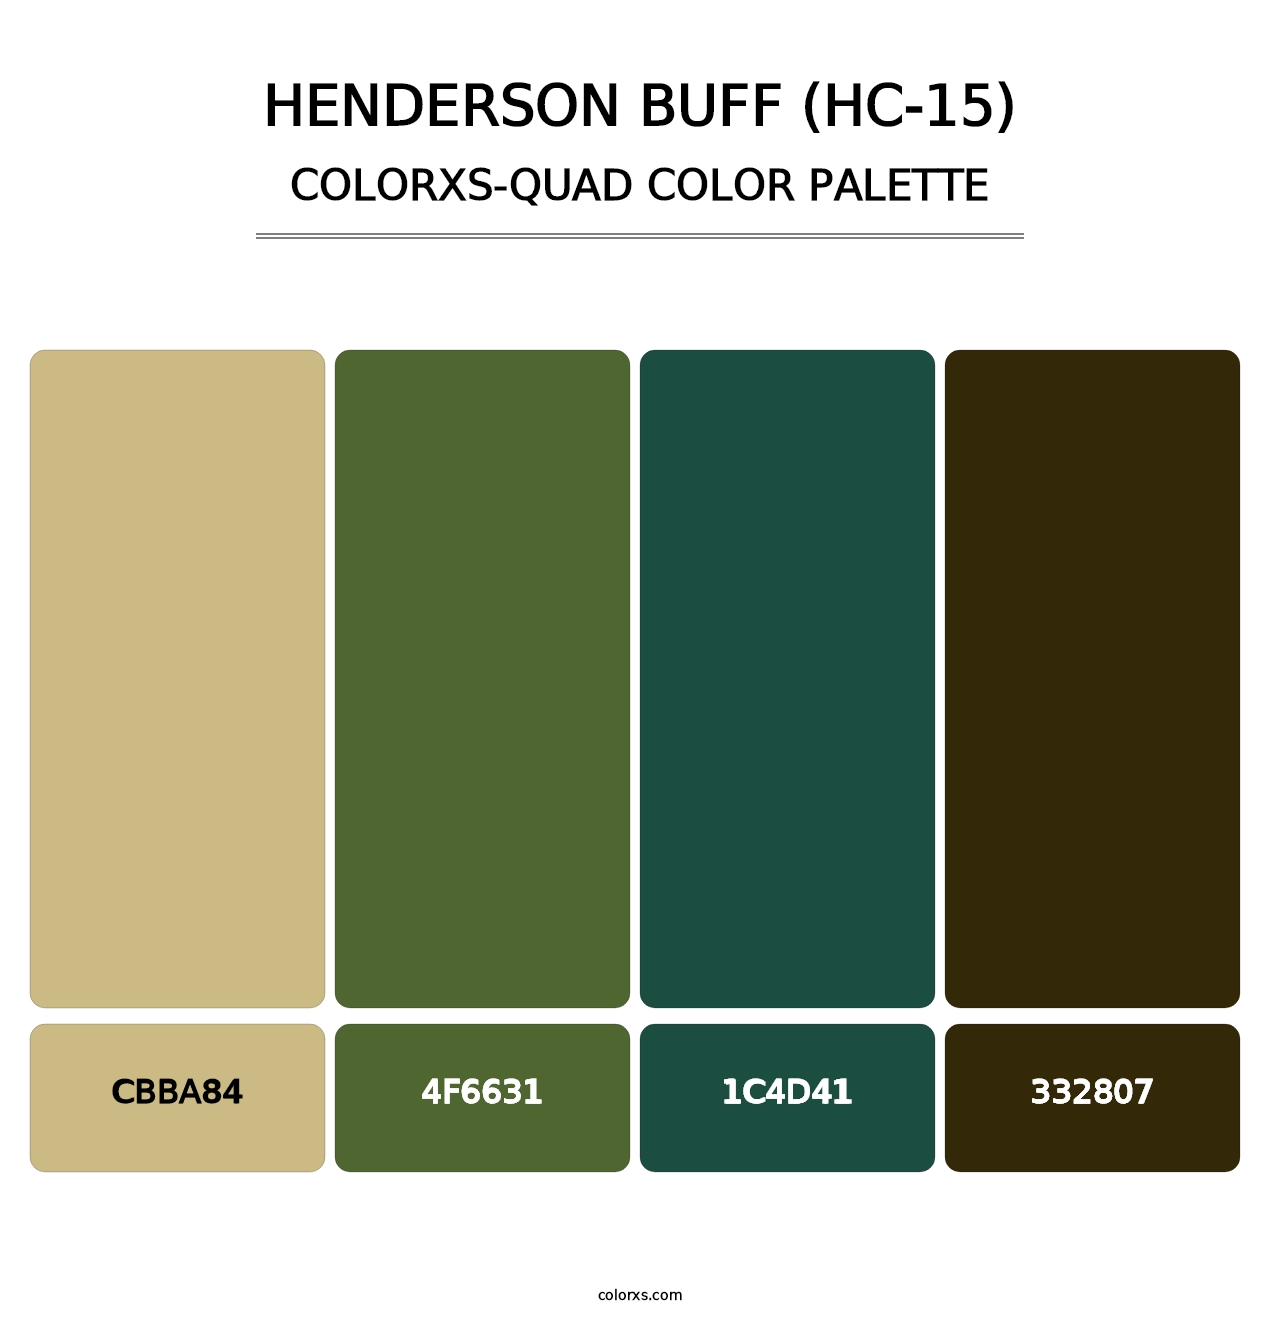 Henderson Buff (HC-15) - Colorxs Quad Palette